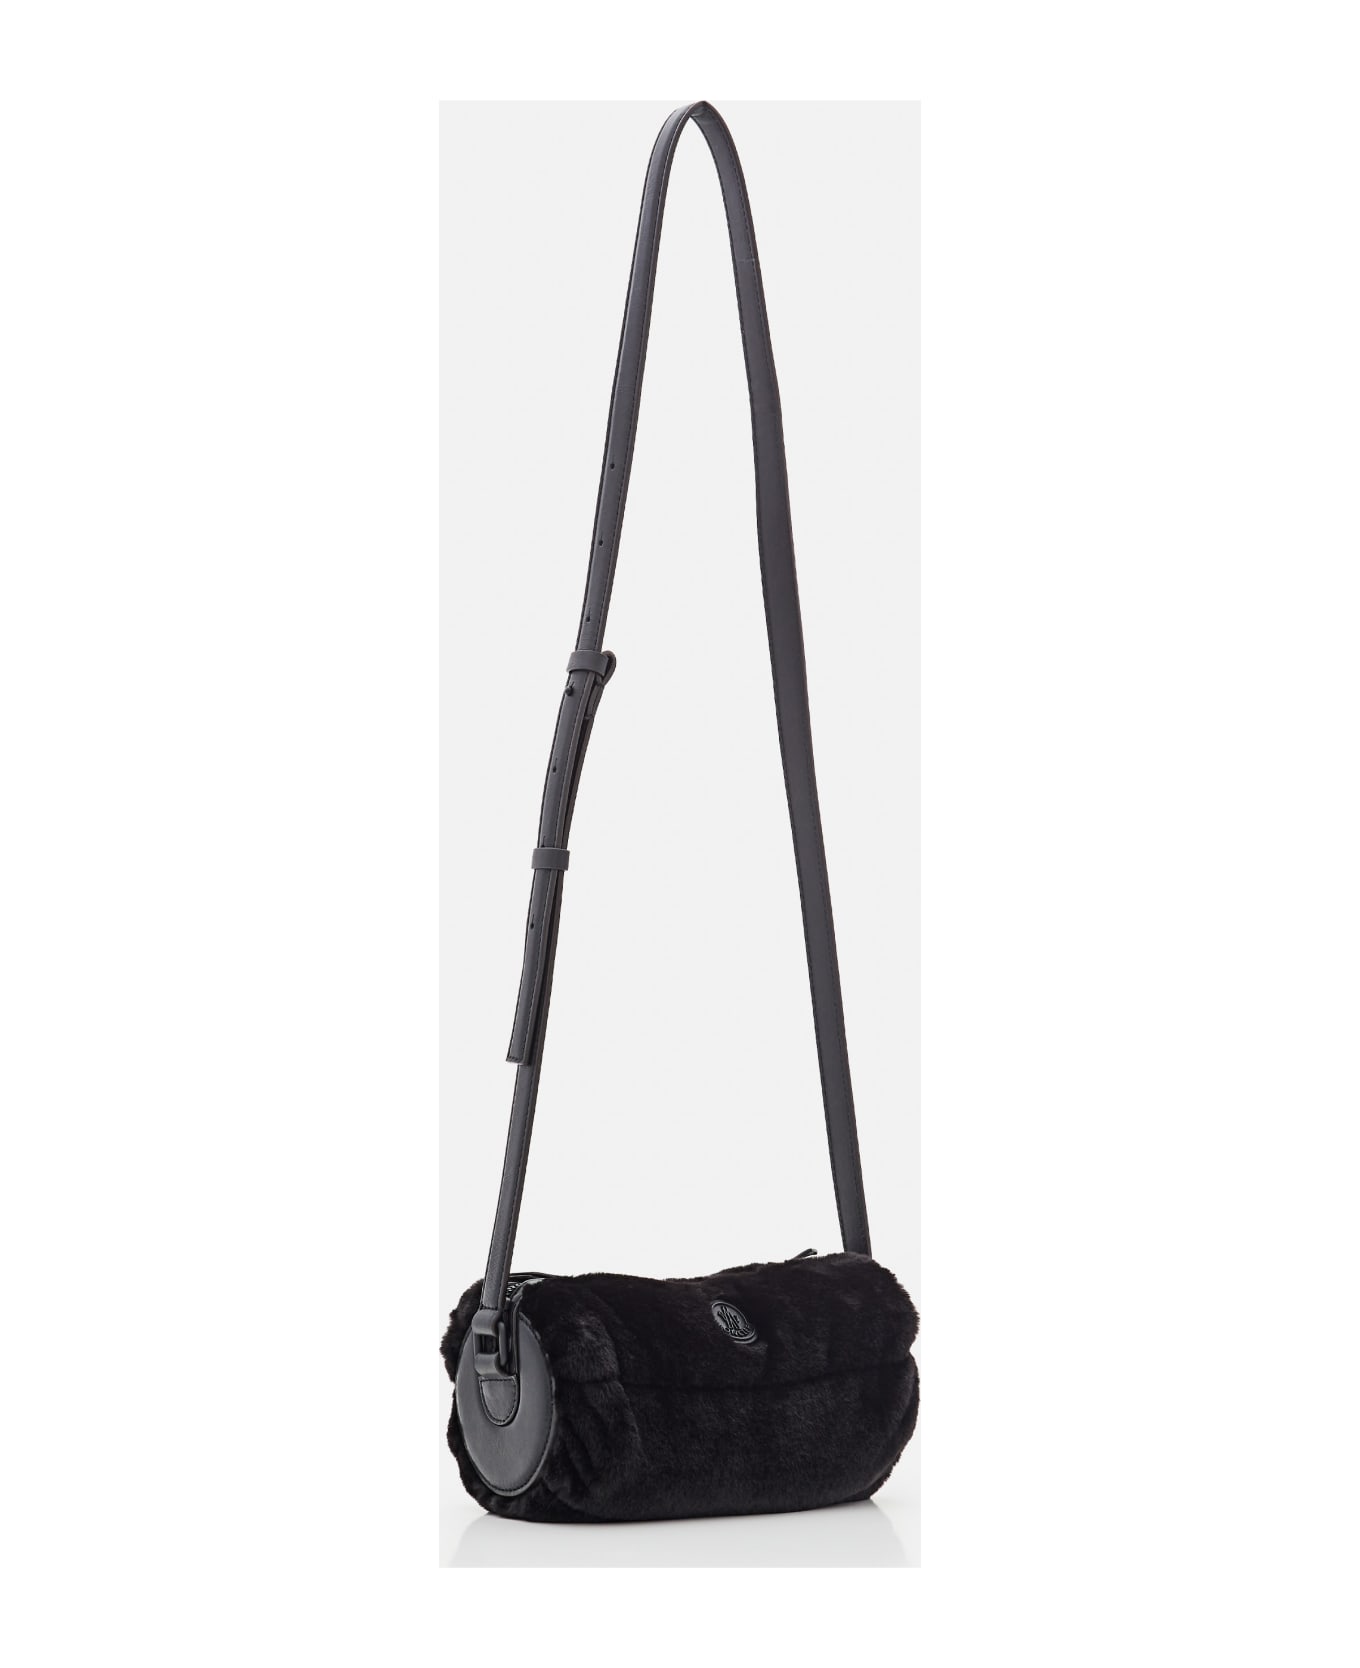 Moncler Keoni New Cross Body Bag - Black ショルダーバッグ